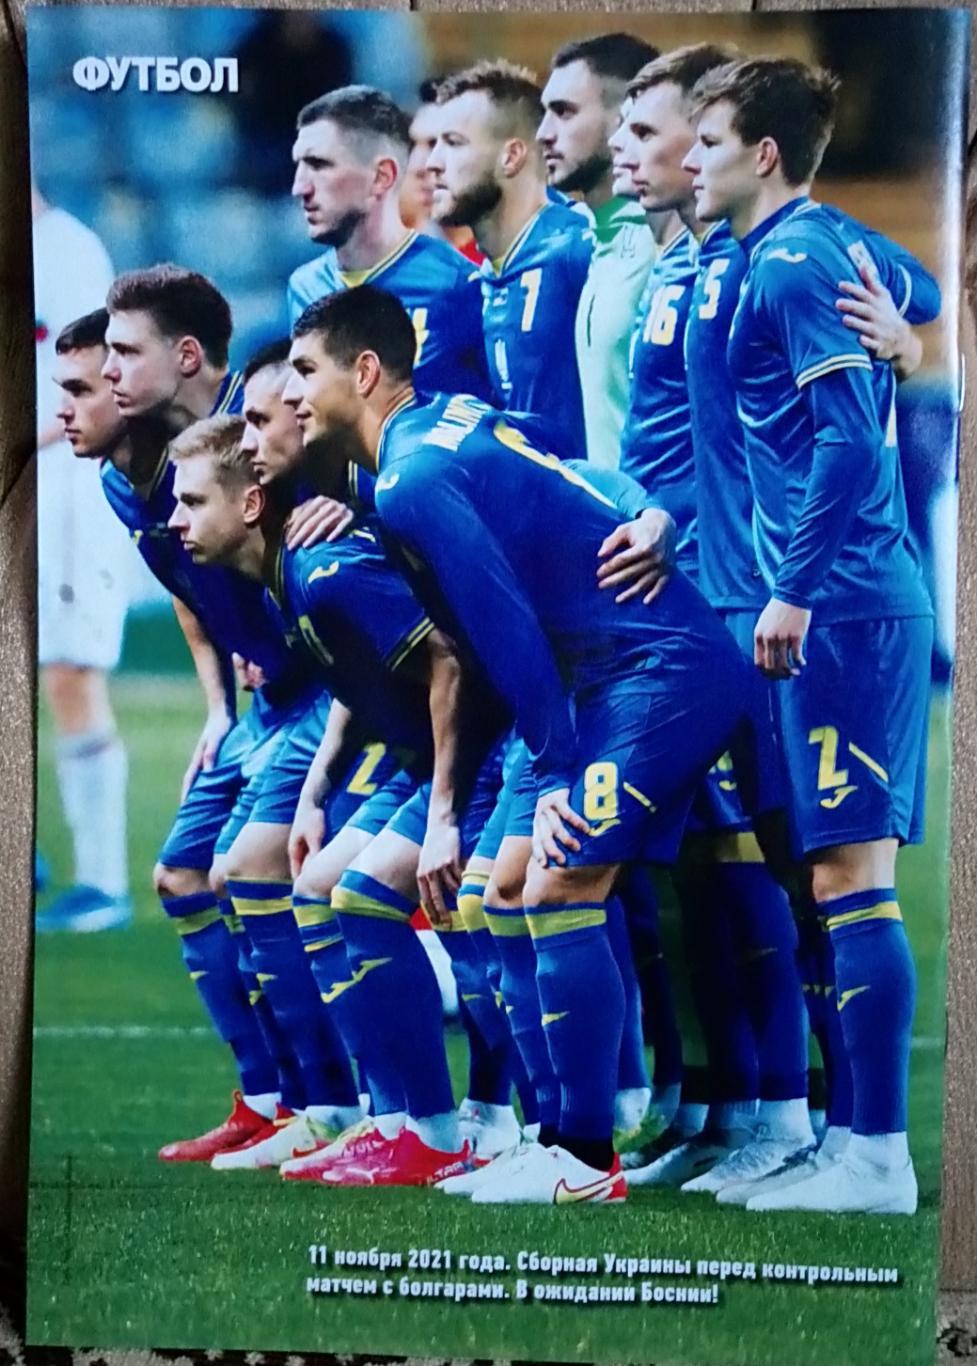 Журнал. Футбол. N 87/2021.Постер Украина, Металлист. 1